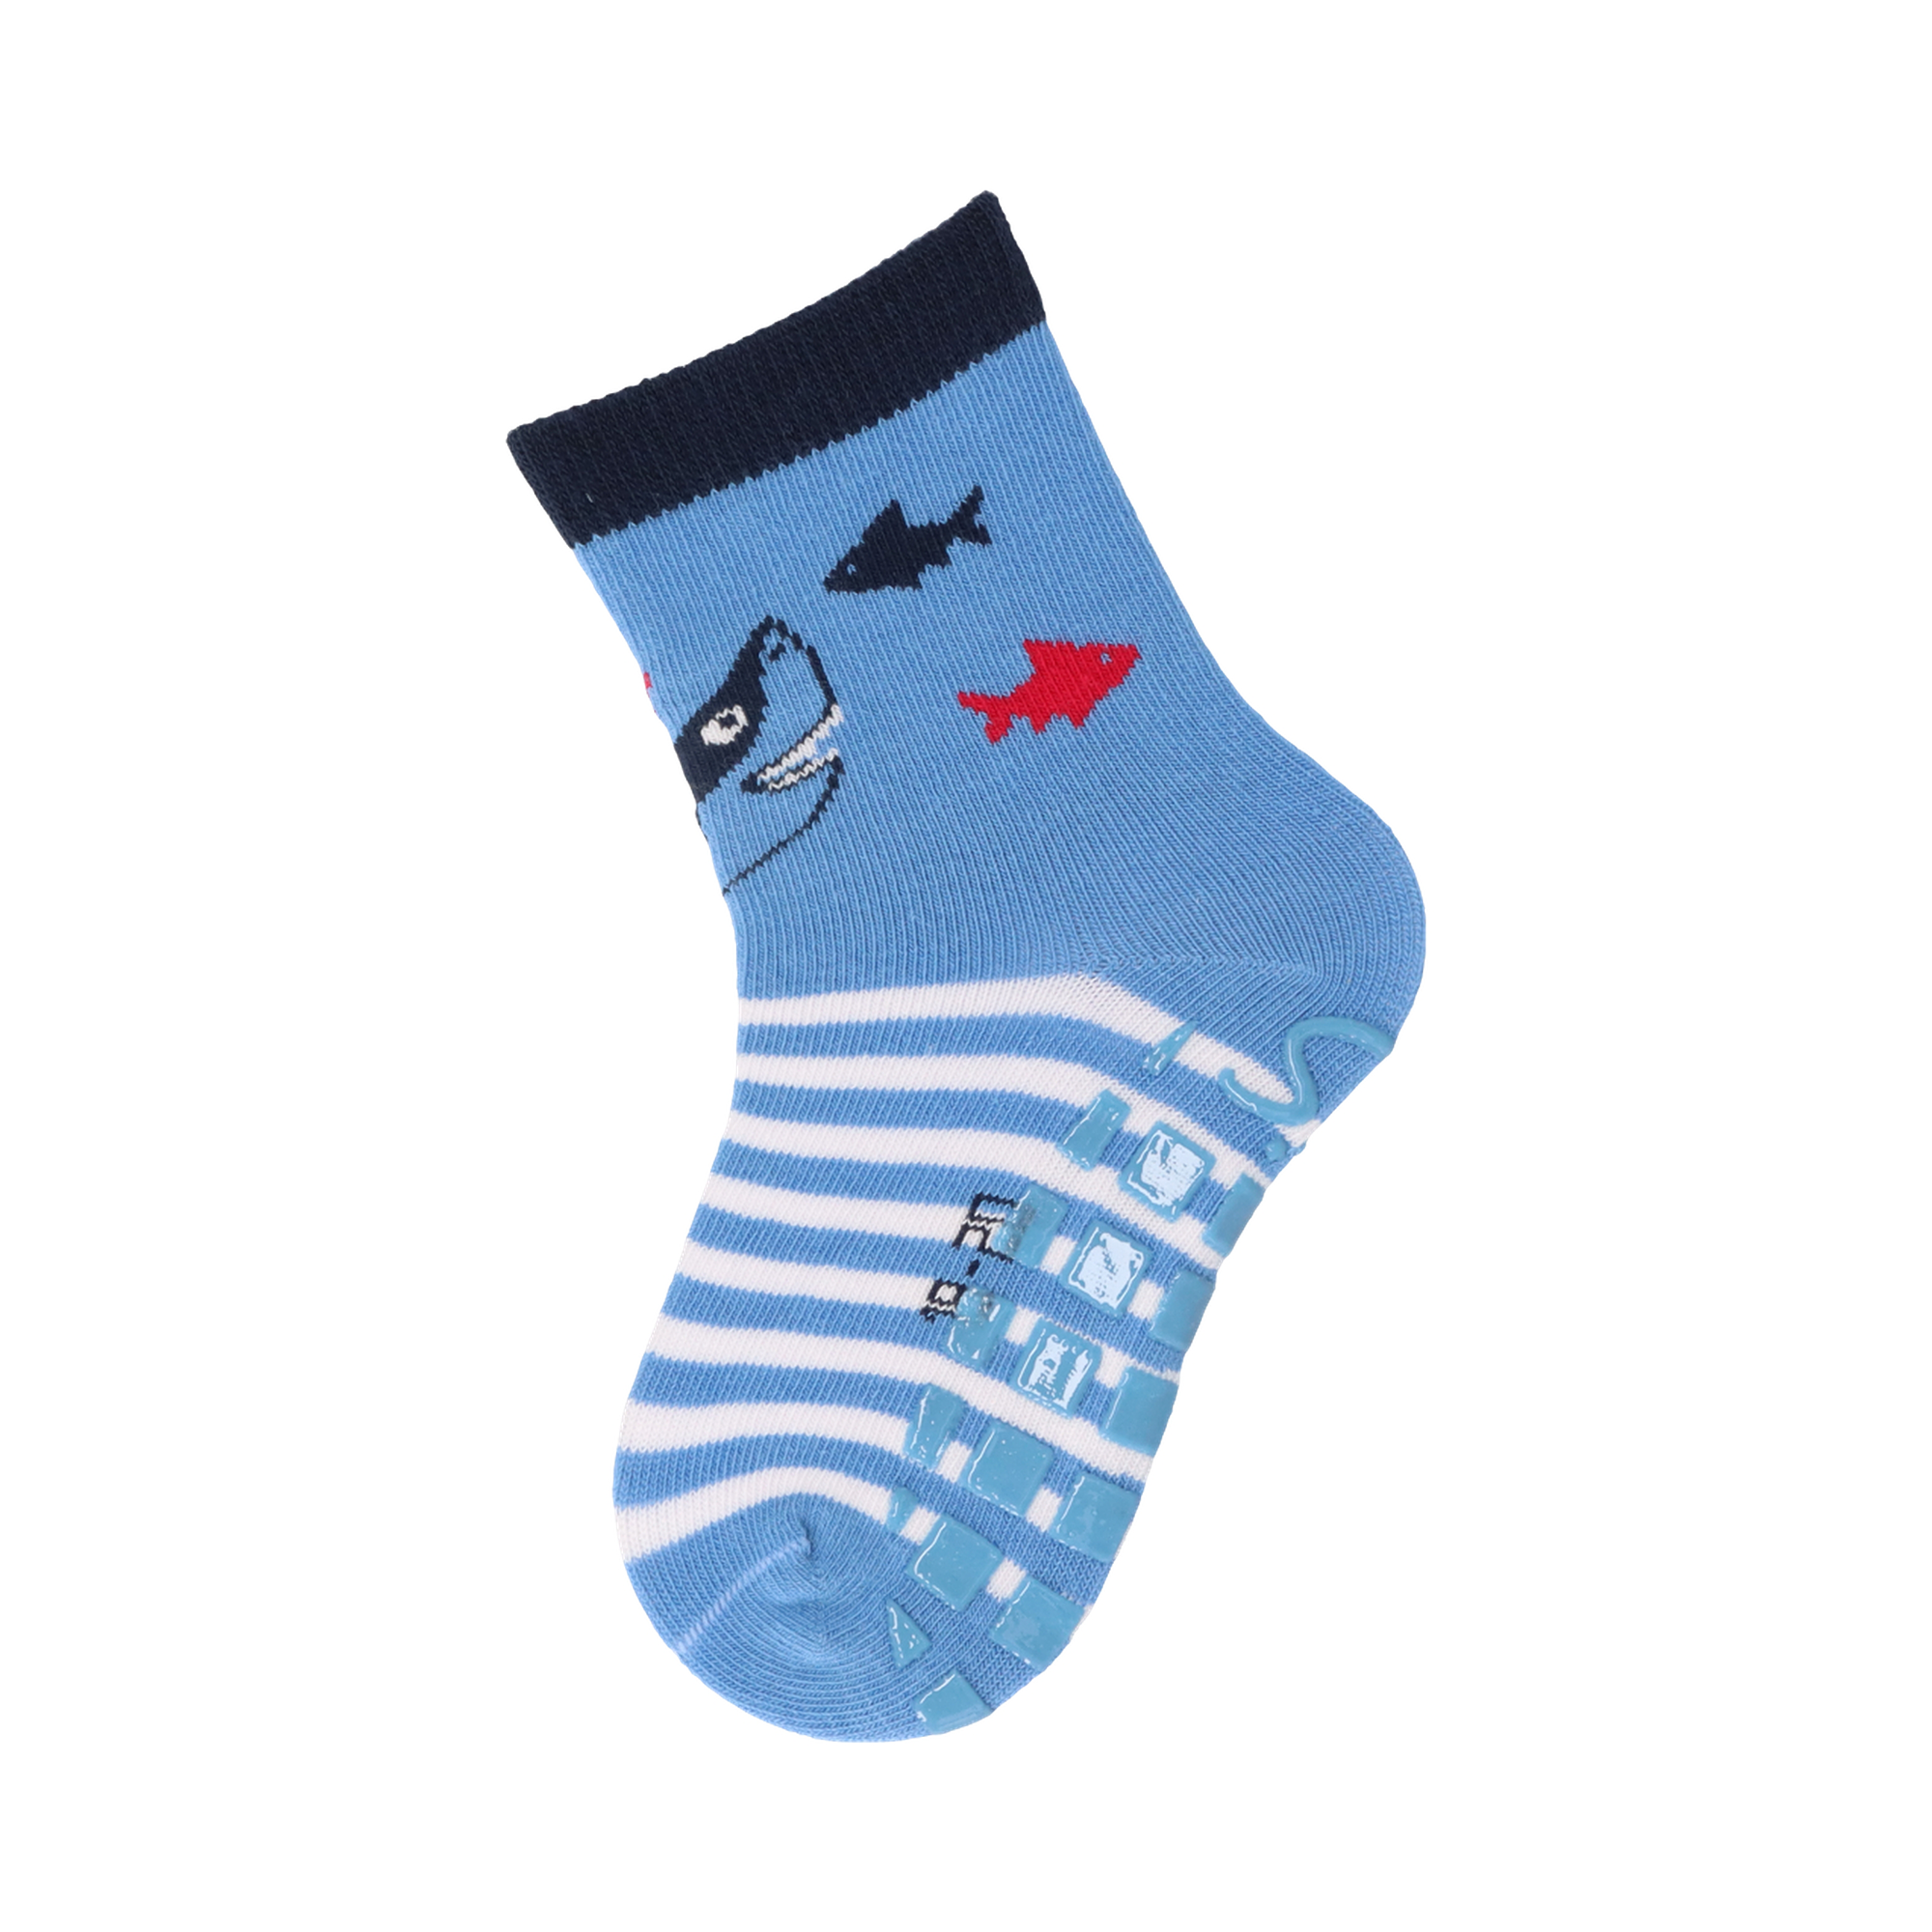 ABS Socken Hai/Fische Sterntaler Blau M2000586072901 2